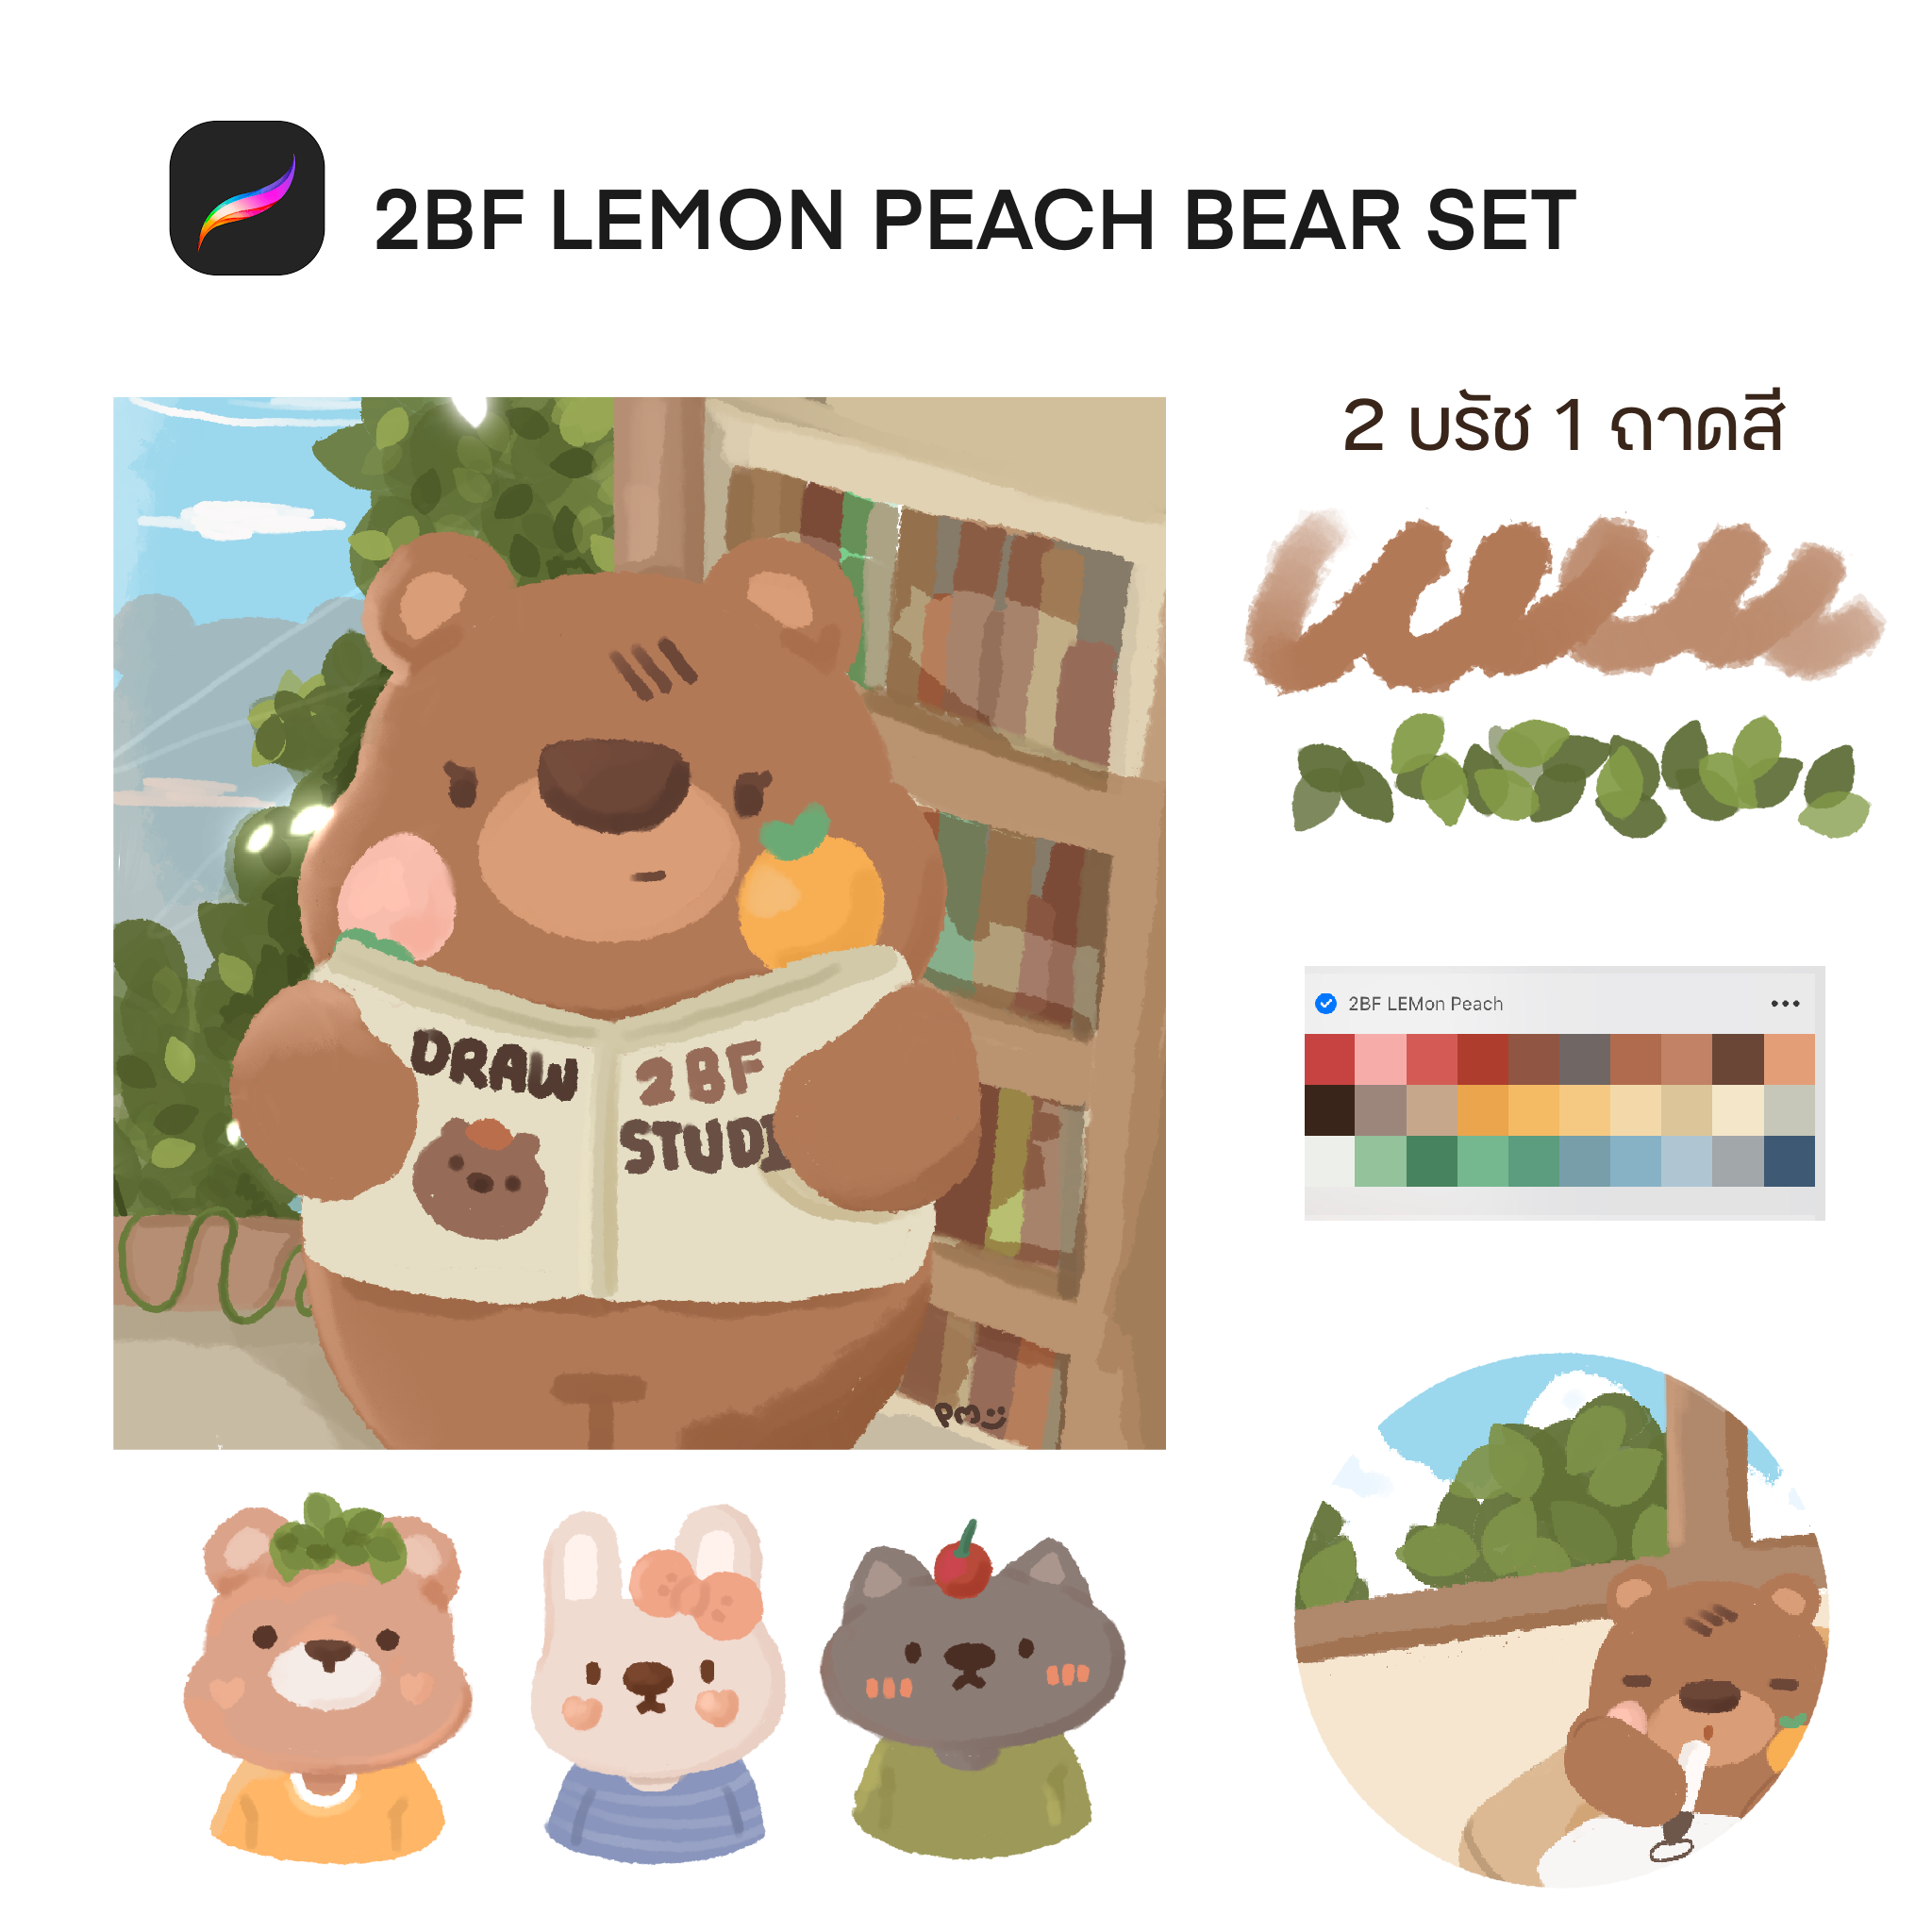 2BF LEMON Peach bear set